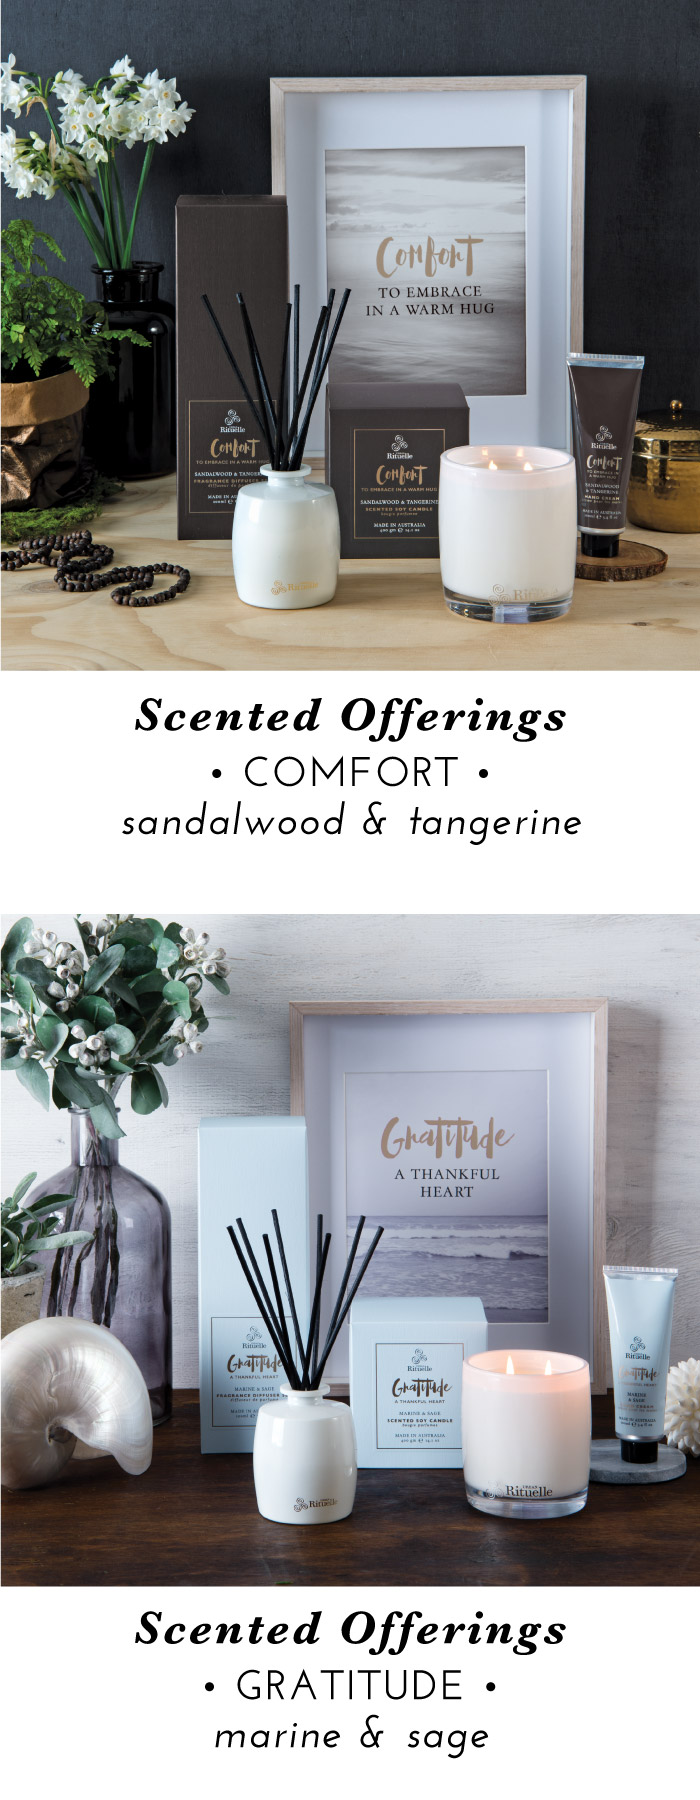 Comfort: Sandalwood & Tangerine. Gratitude: Marine & Sage